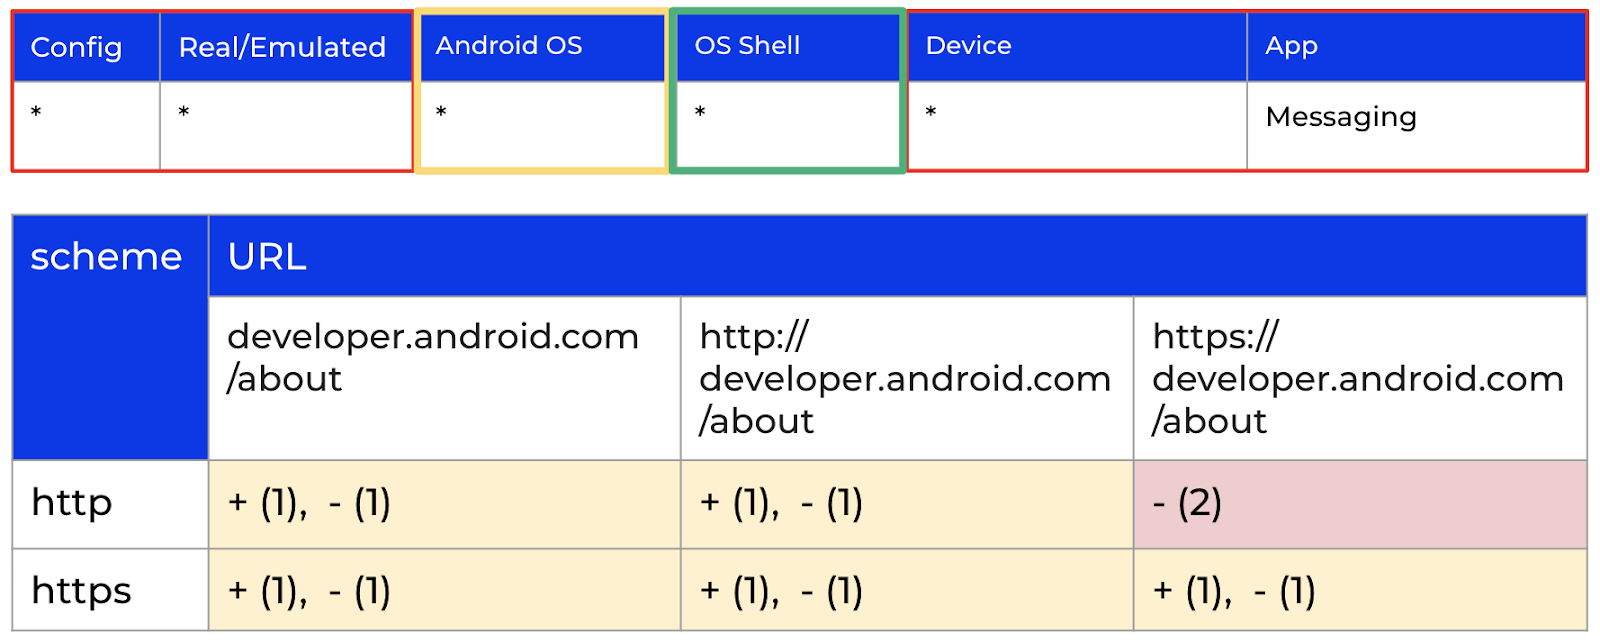 Результаты проверки гипотезы о влиянии оболочки Android ОС на встроенном СМС-клиенте.
